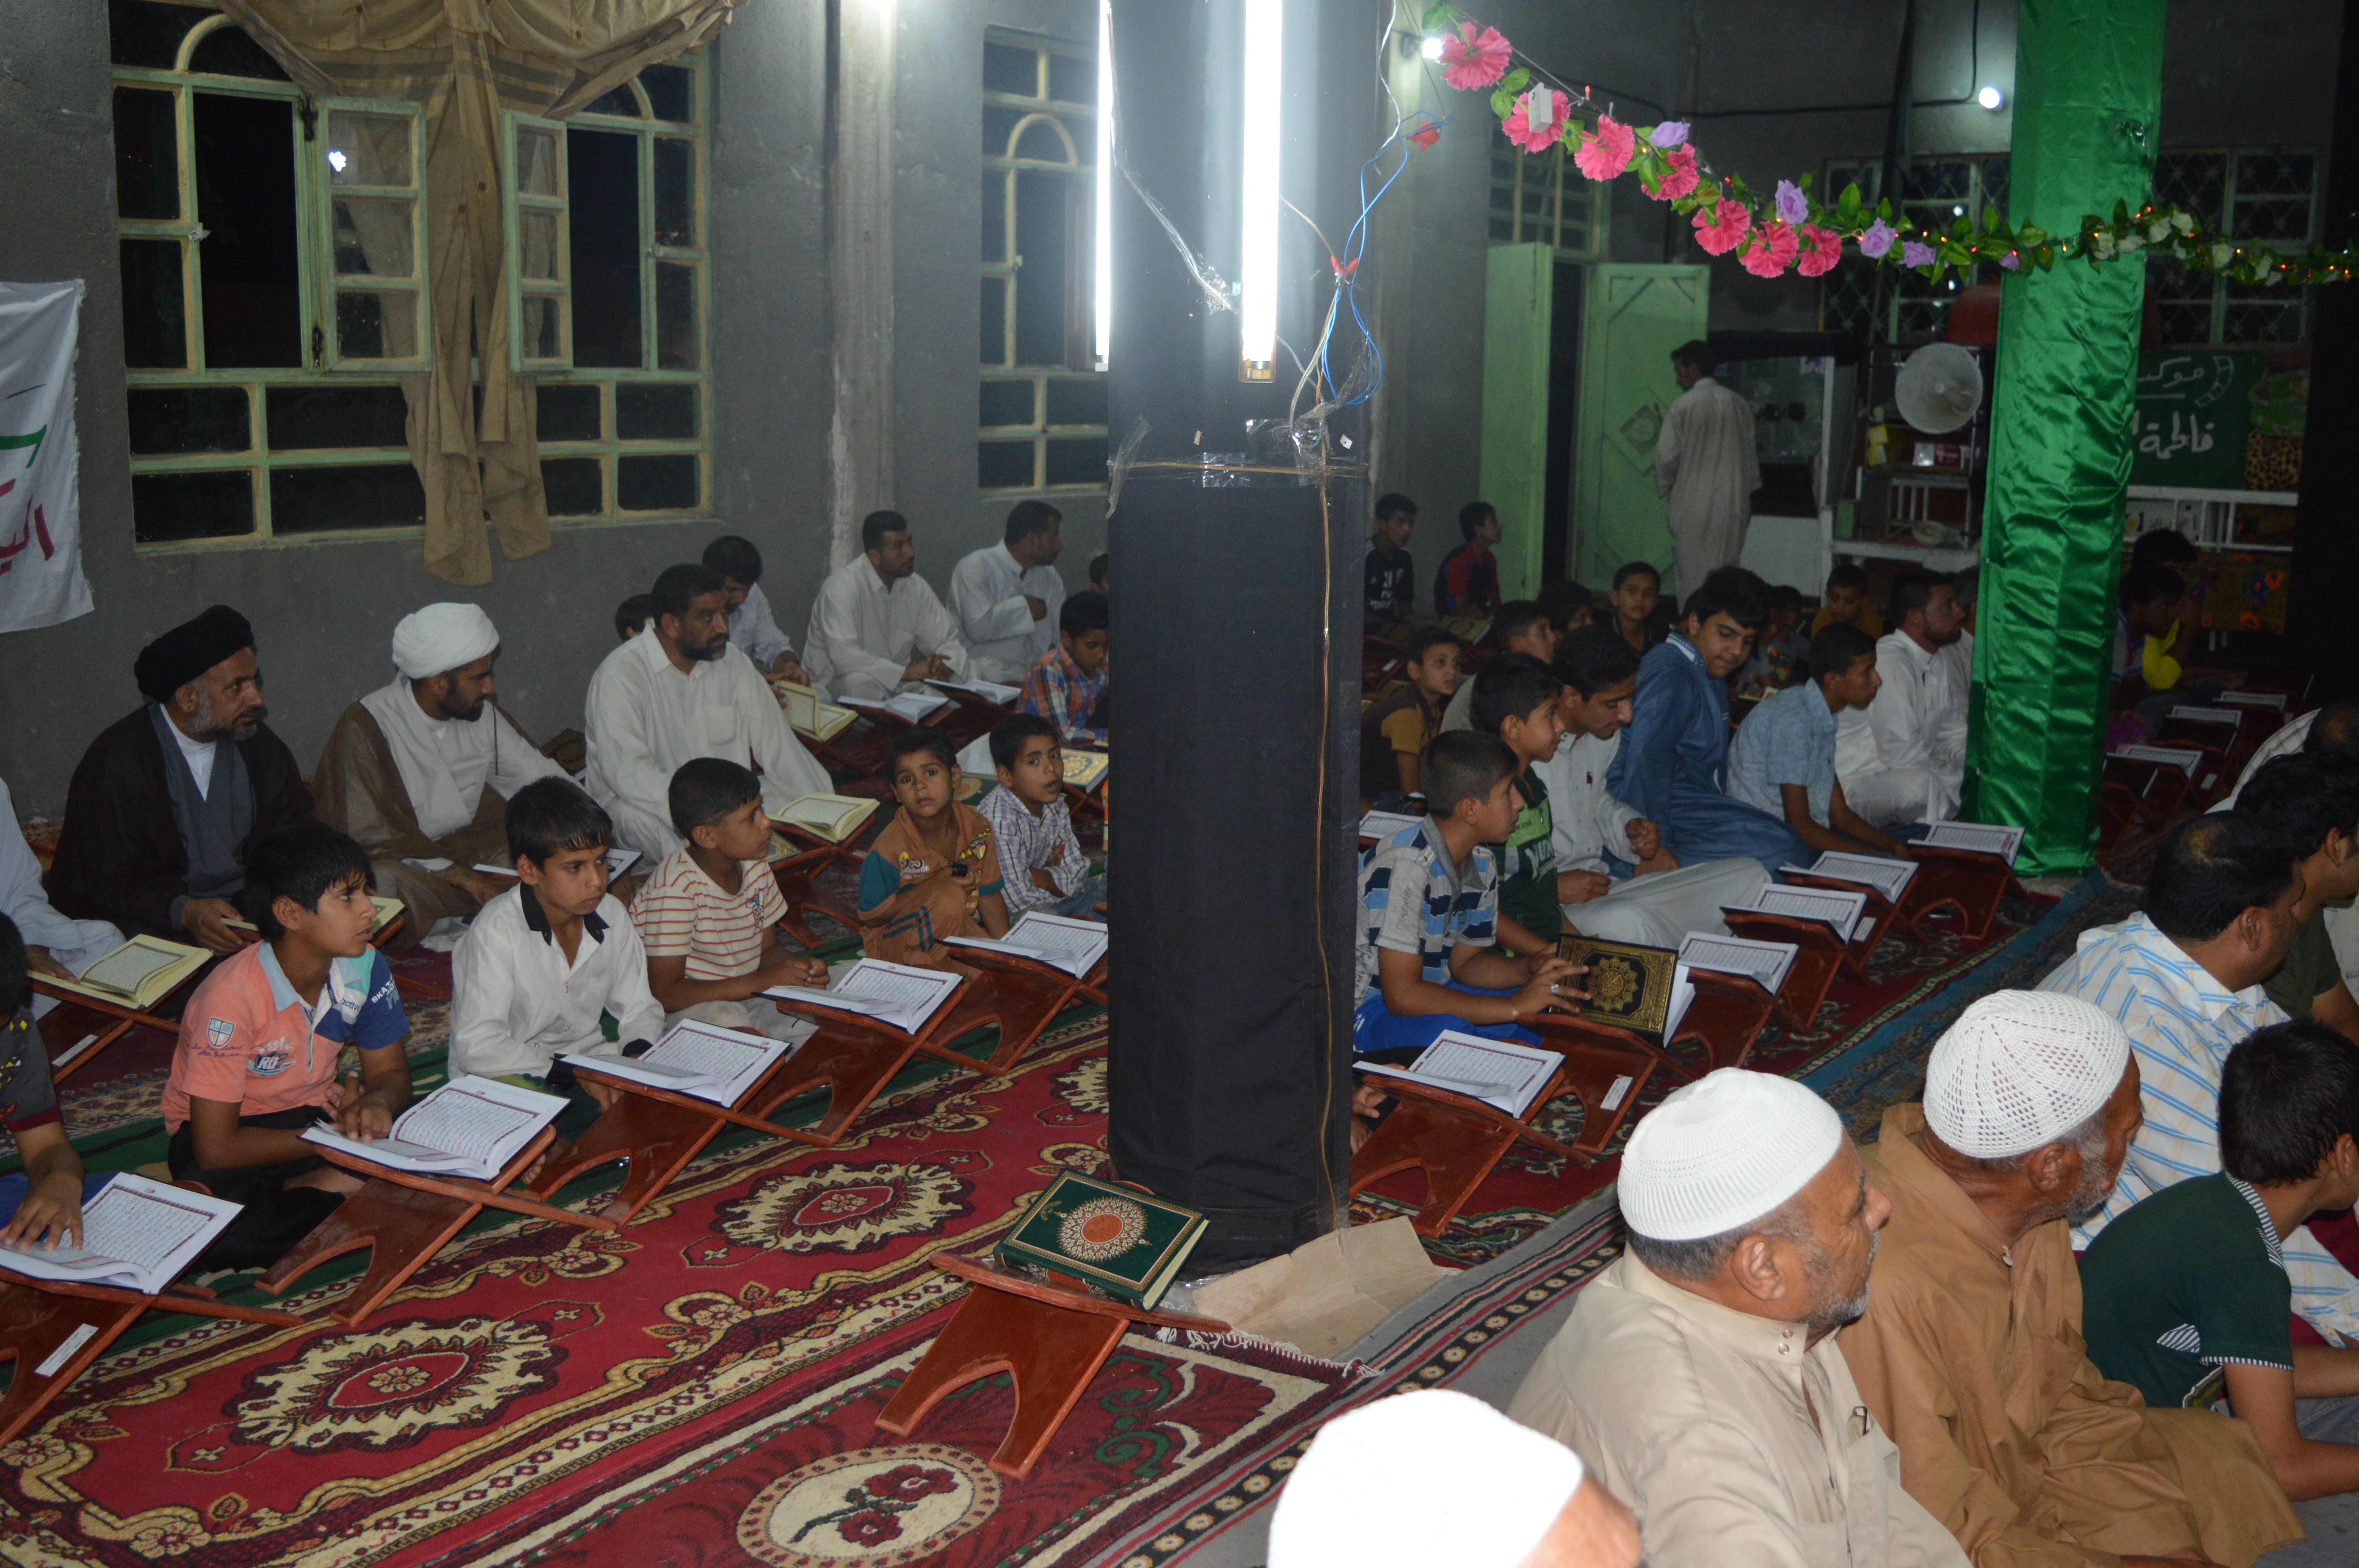  بمناسبة ولادة الامام الحسين (عليه السلام) يقيم معهد القرآن الكريم _فرع الهندية محفلاً قرآنياً مباركاً